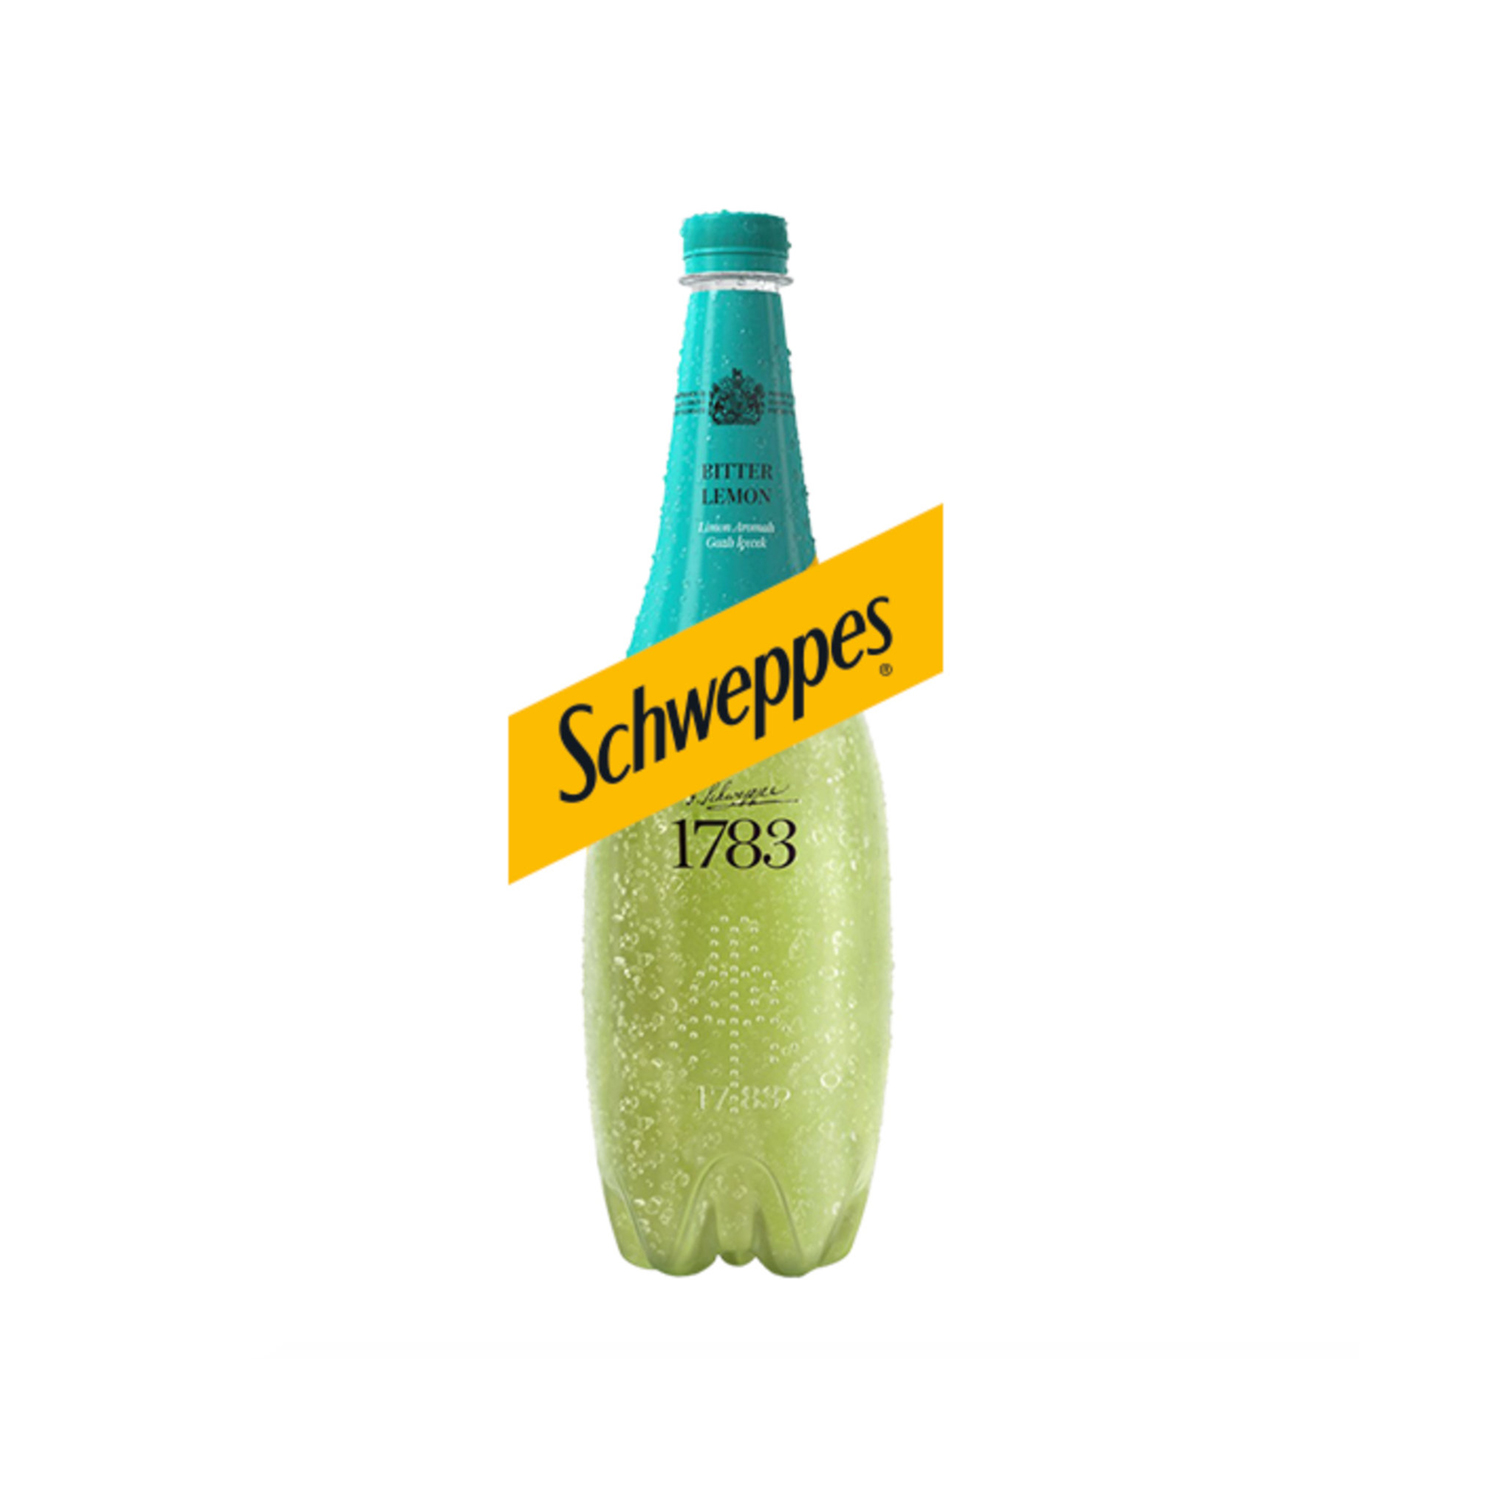 Schweppes Limon Aromalı Gazlı İçecek Pet 1 L